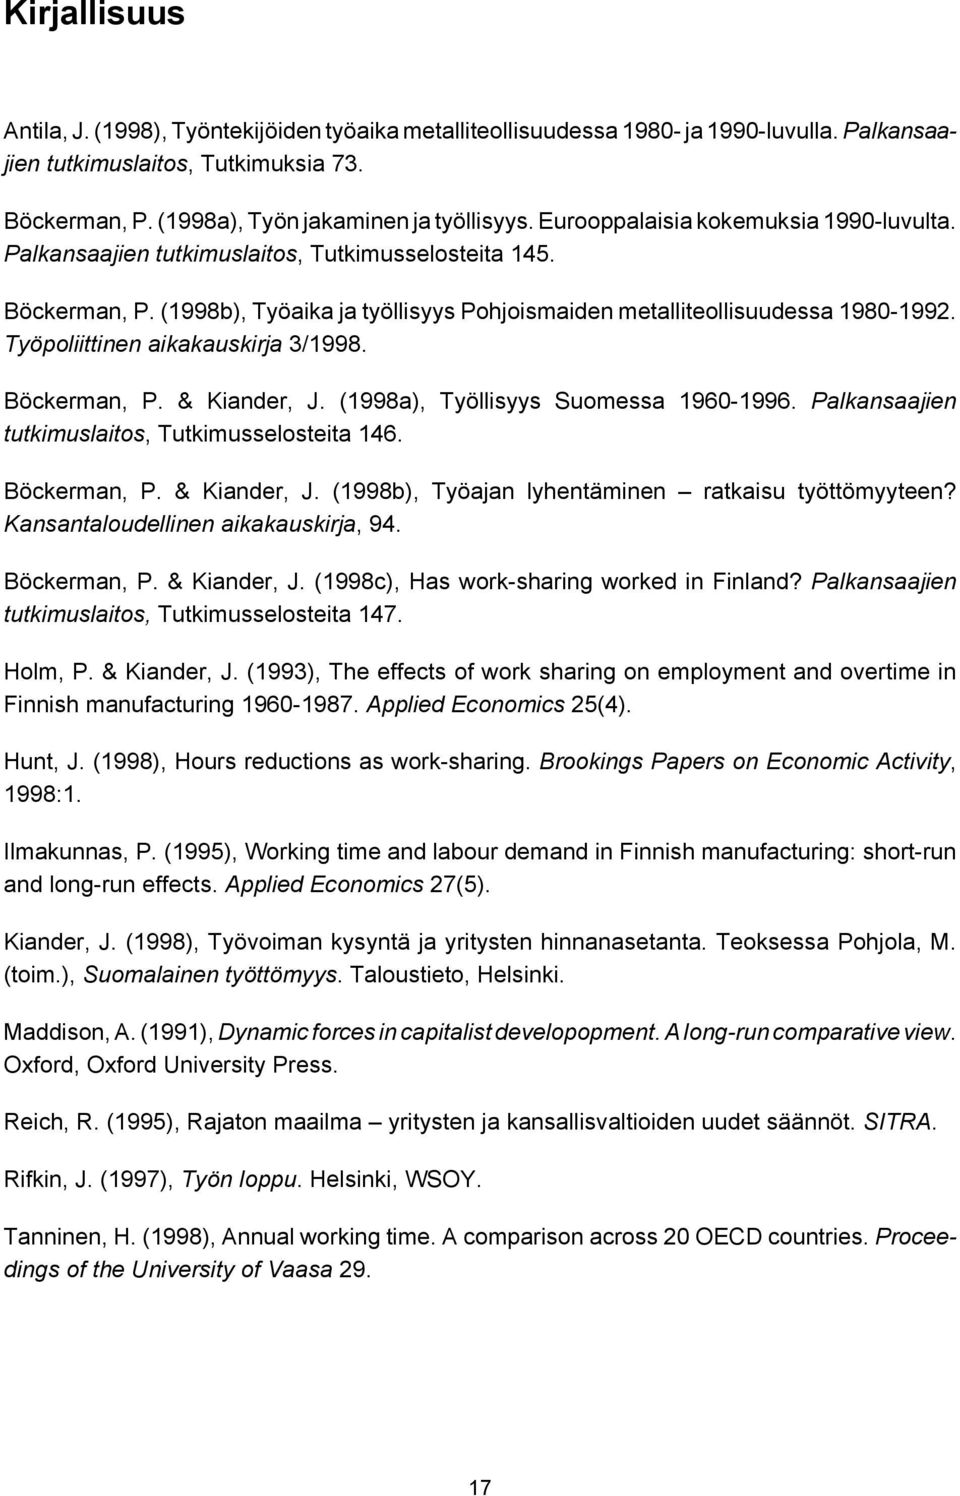 Työpoliittinen aikakauskirja 3/1998. Böckerman, P. & Kiander, J. (1998a), Työllisyys Suomessa 1960-1996. Palkansaajien tutkimuslaitos, Tutkimusselosteita 146. Böckerman, P. & Kiander, J. (1998b), Työajan lyhentäminen ratkaisu työttömyyteen?